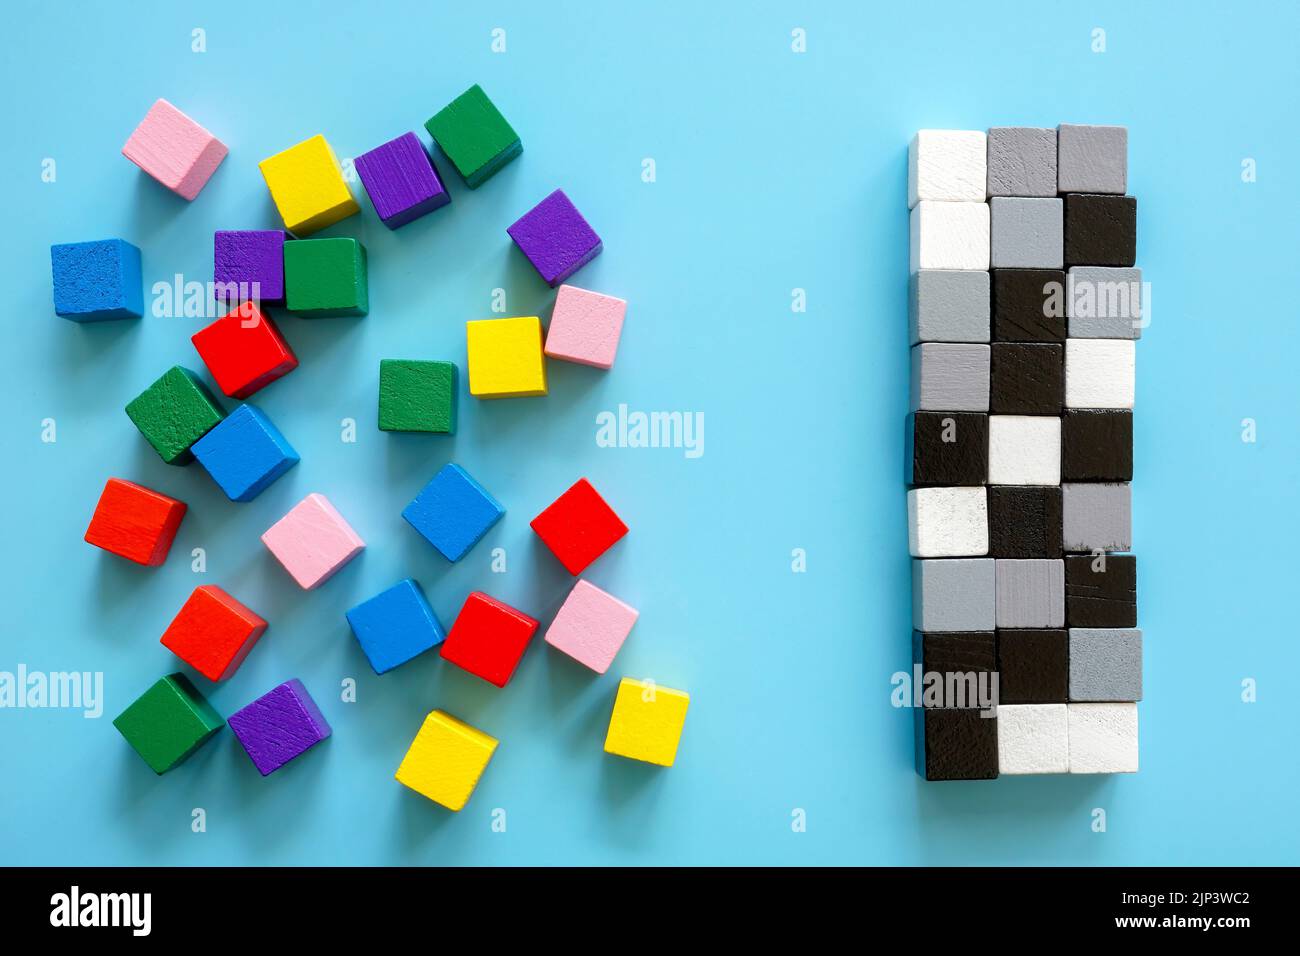 Cubi colorati e una linea di cubi bianchi e neri. Concetto di diversità e inclusione. Foto Stock